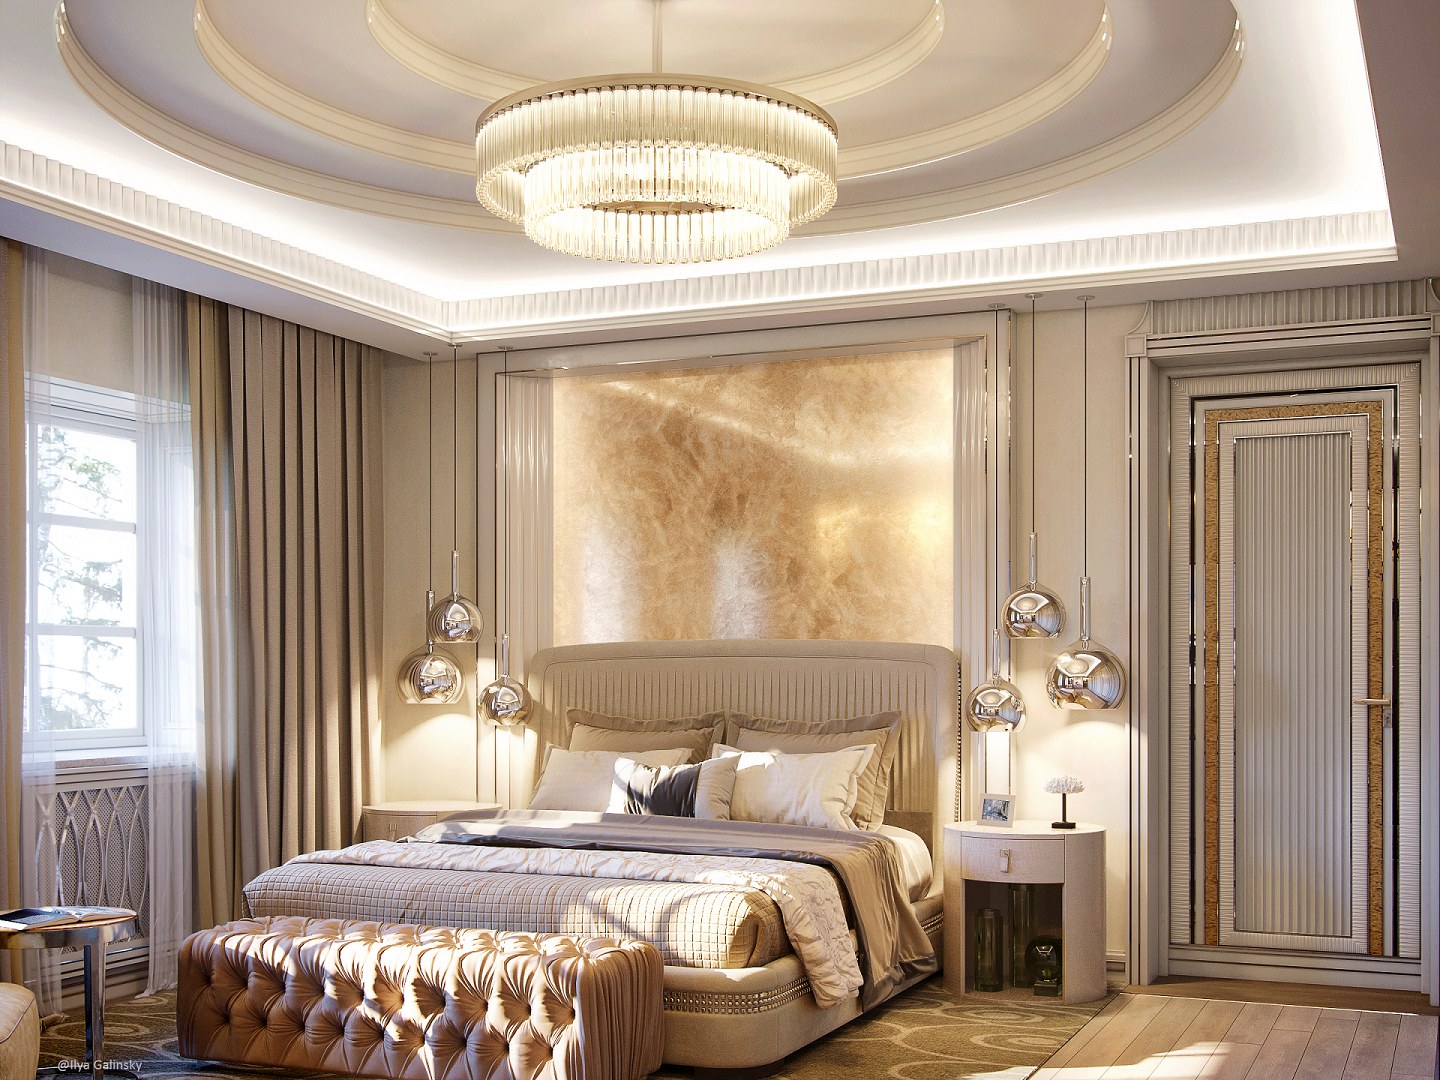 Ilya Galinsky | Bedroom  project & visualization by Ilya Galinsky